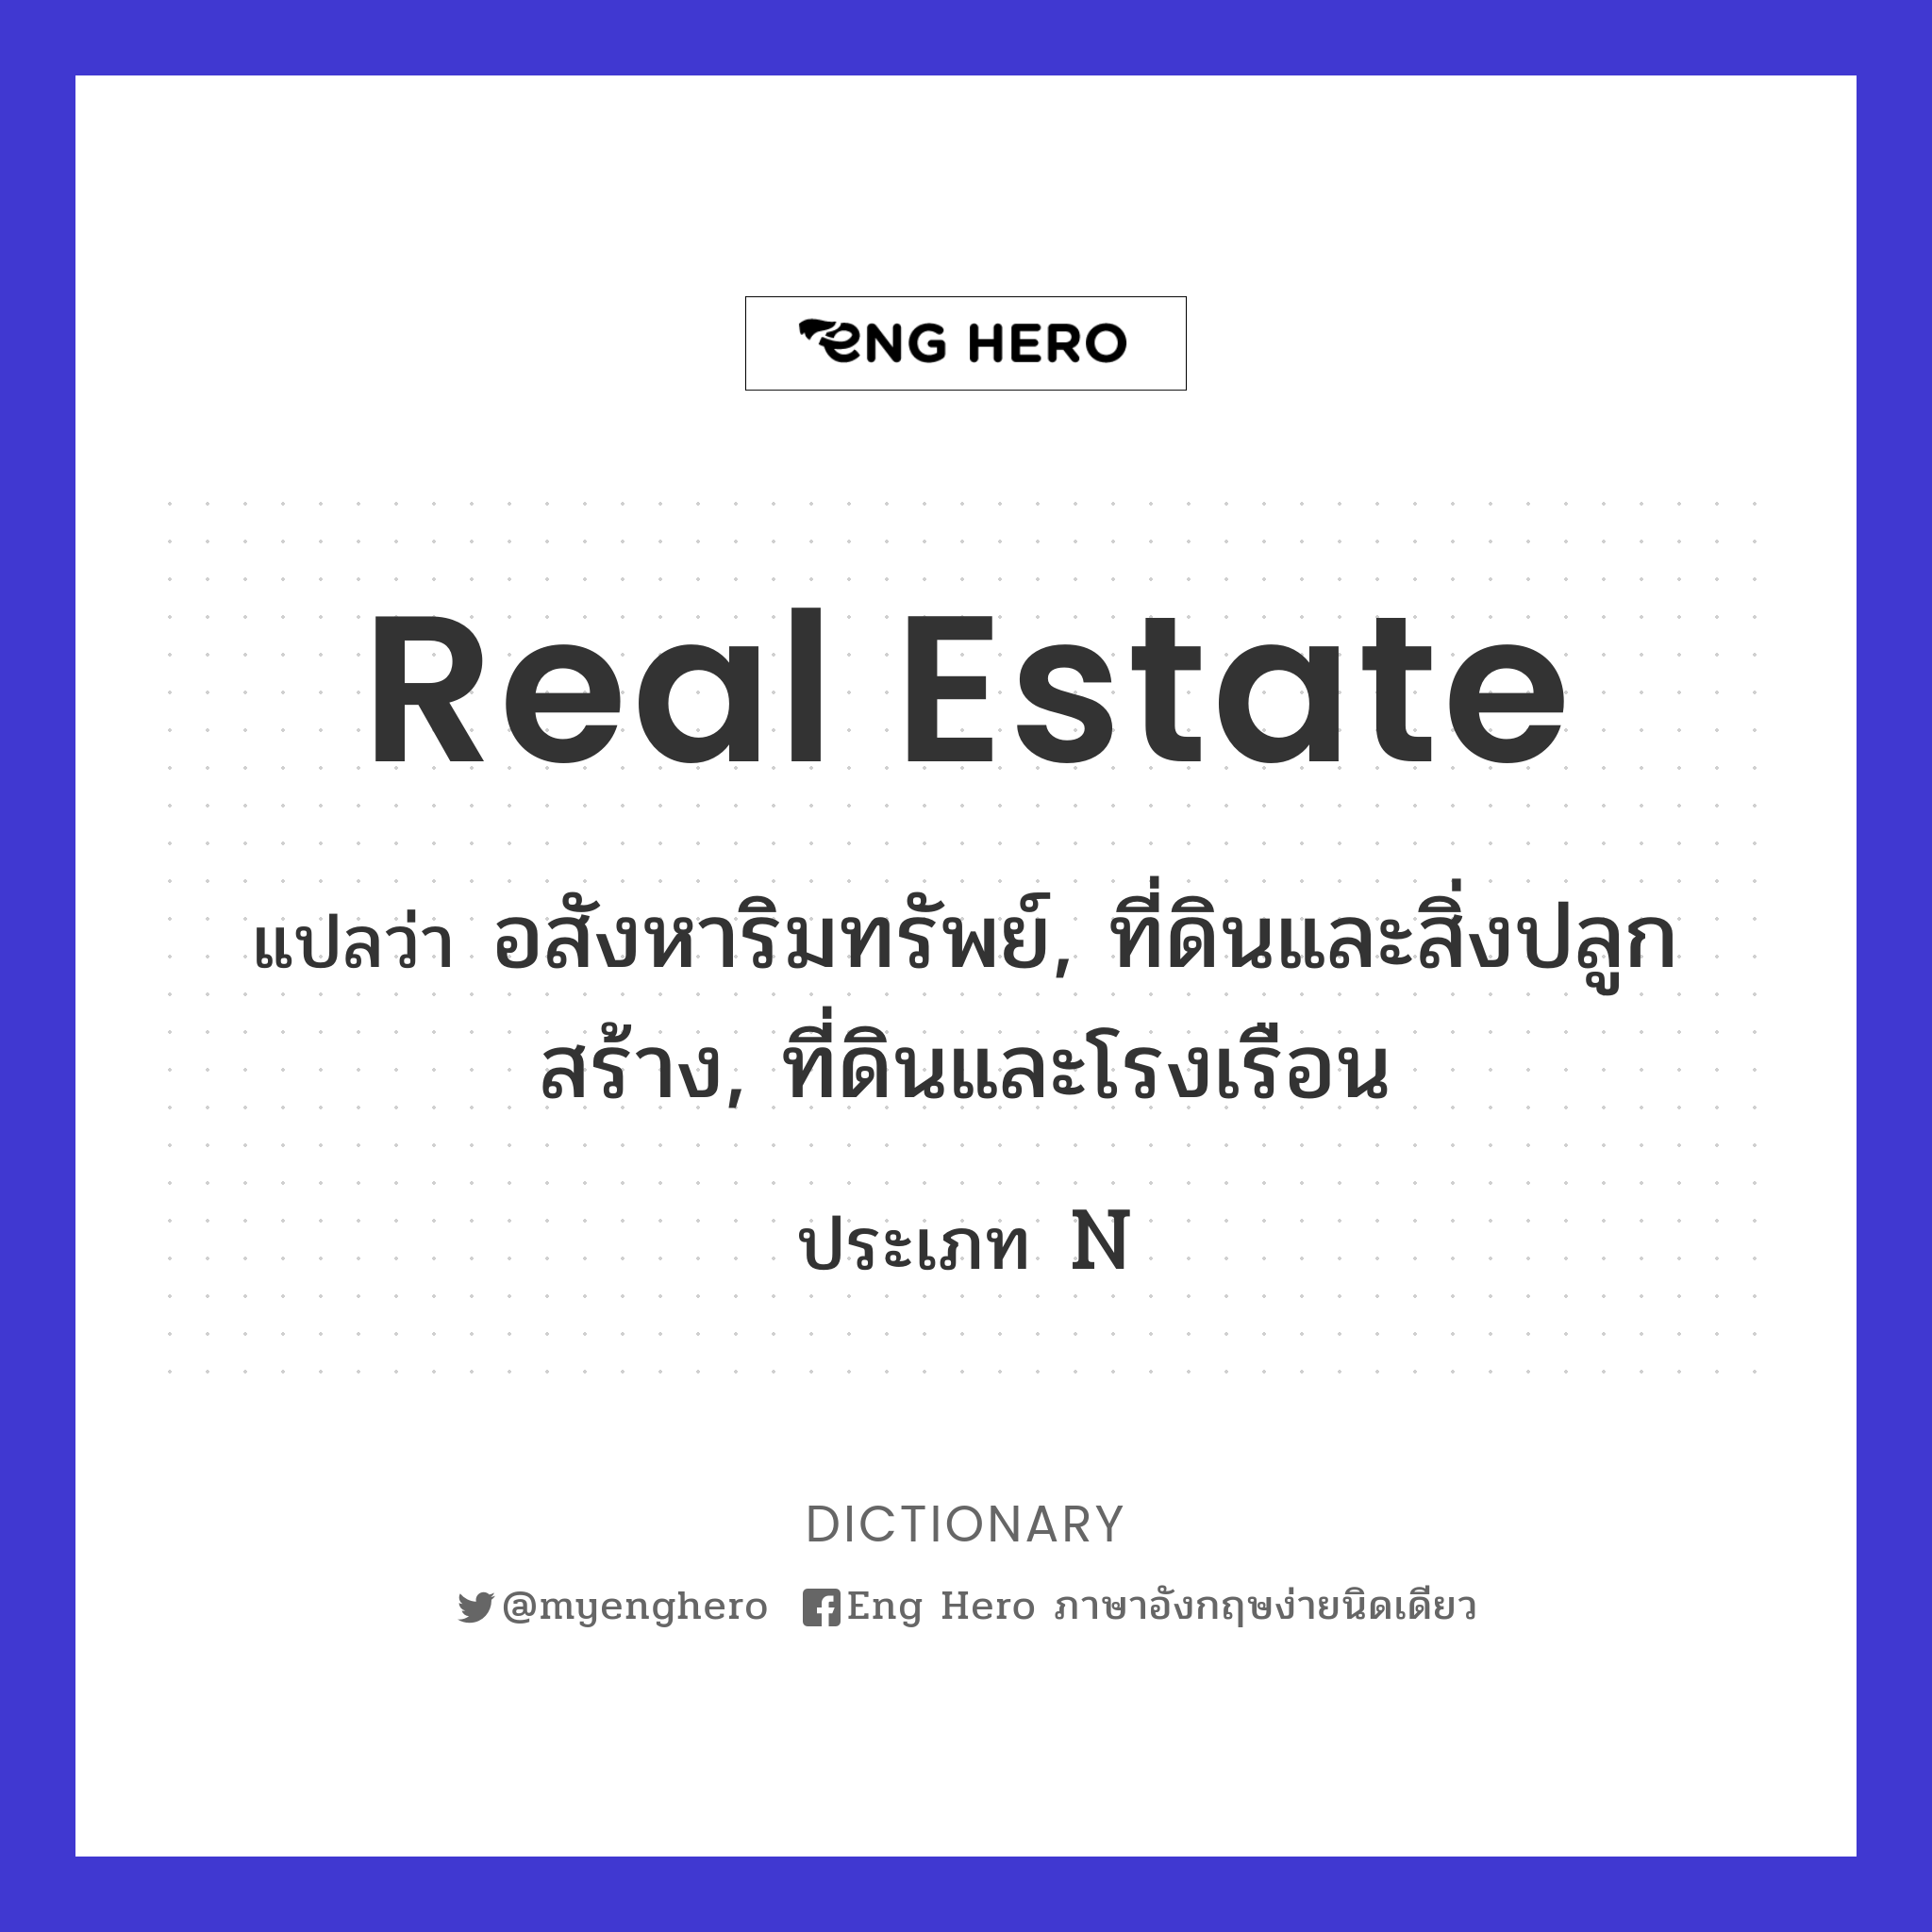 Real Estate แปลว่า อสังหาริมทรัพย์, ที่ดินและสิ่งปลูกสร้าง,  ที่ดินและโรงเรือน | Eng Hero เรียนภาษาอังกฤษ ออนไลน์ ฟรี